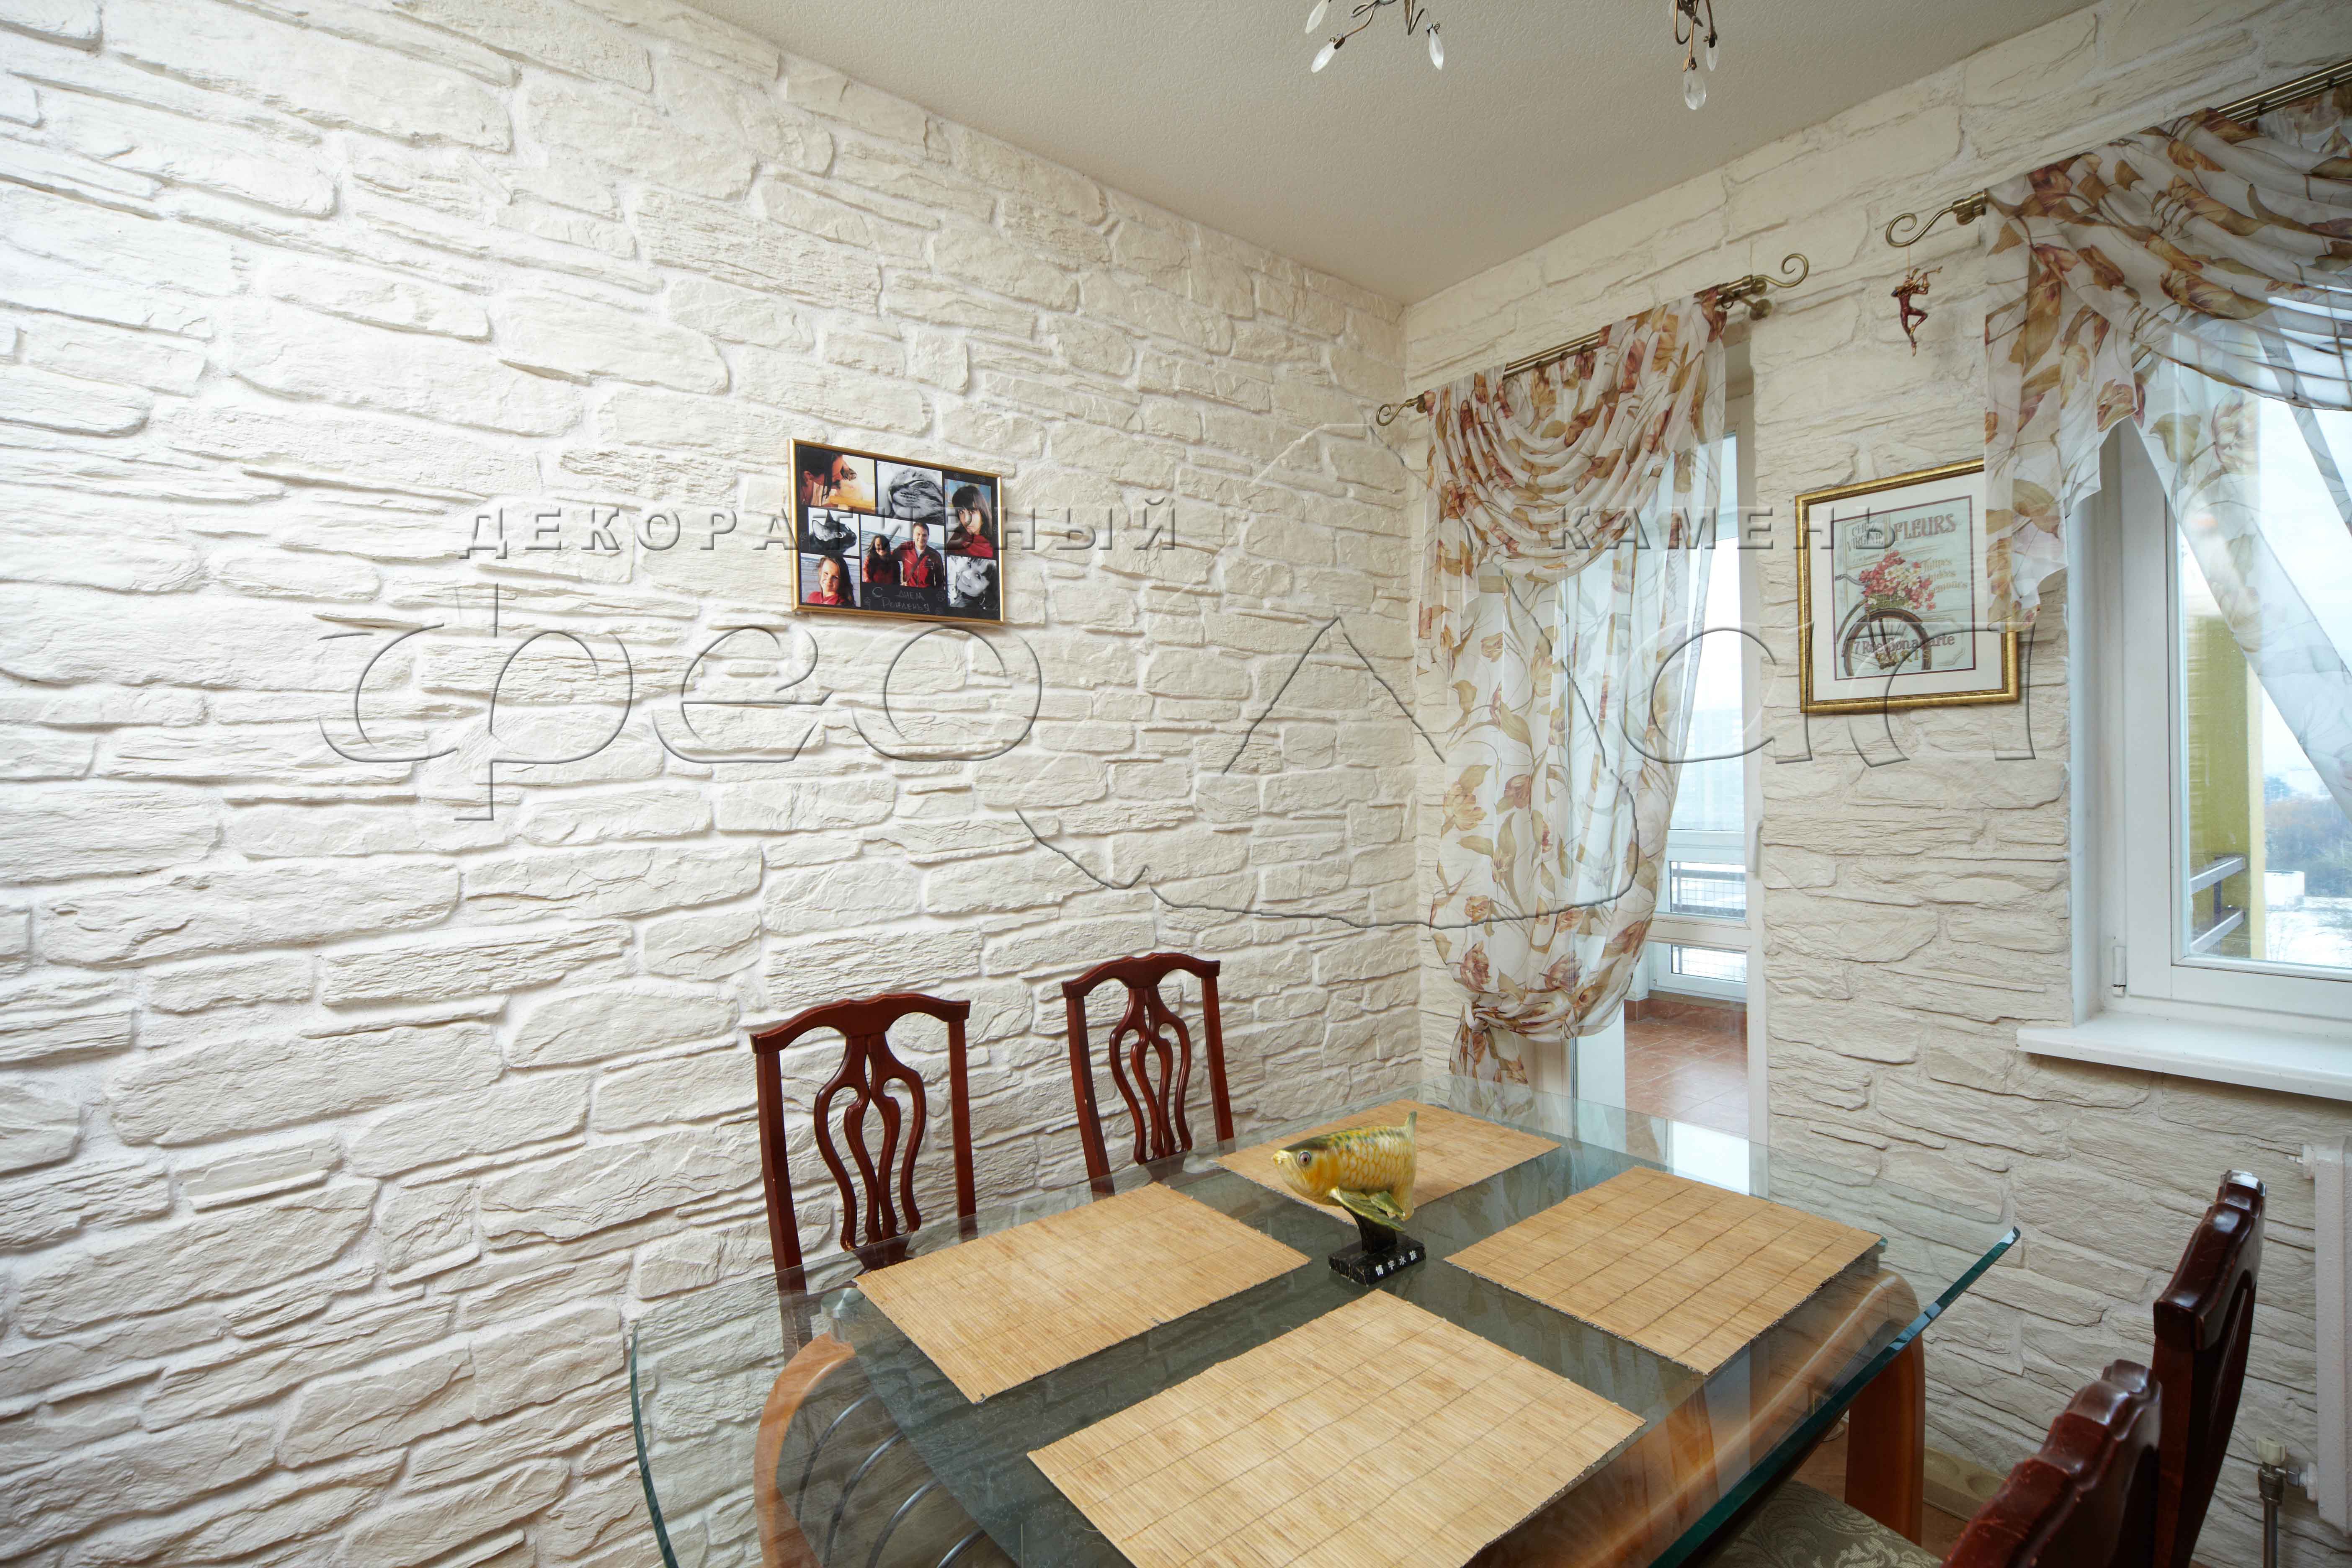  камнем кухни фото:  стен декоративным камнем и обоями в .